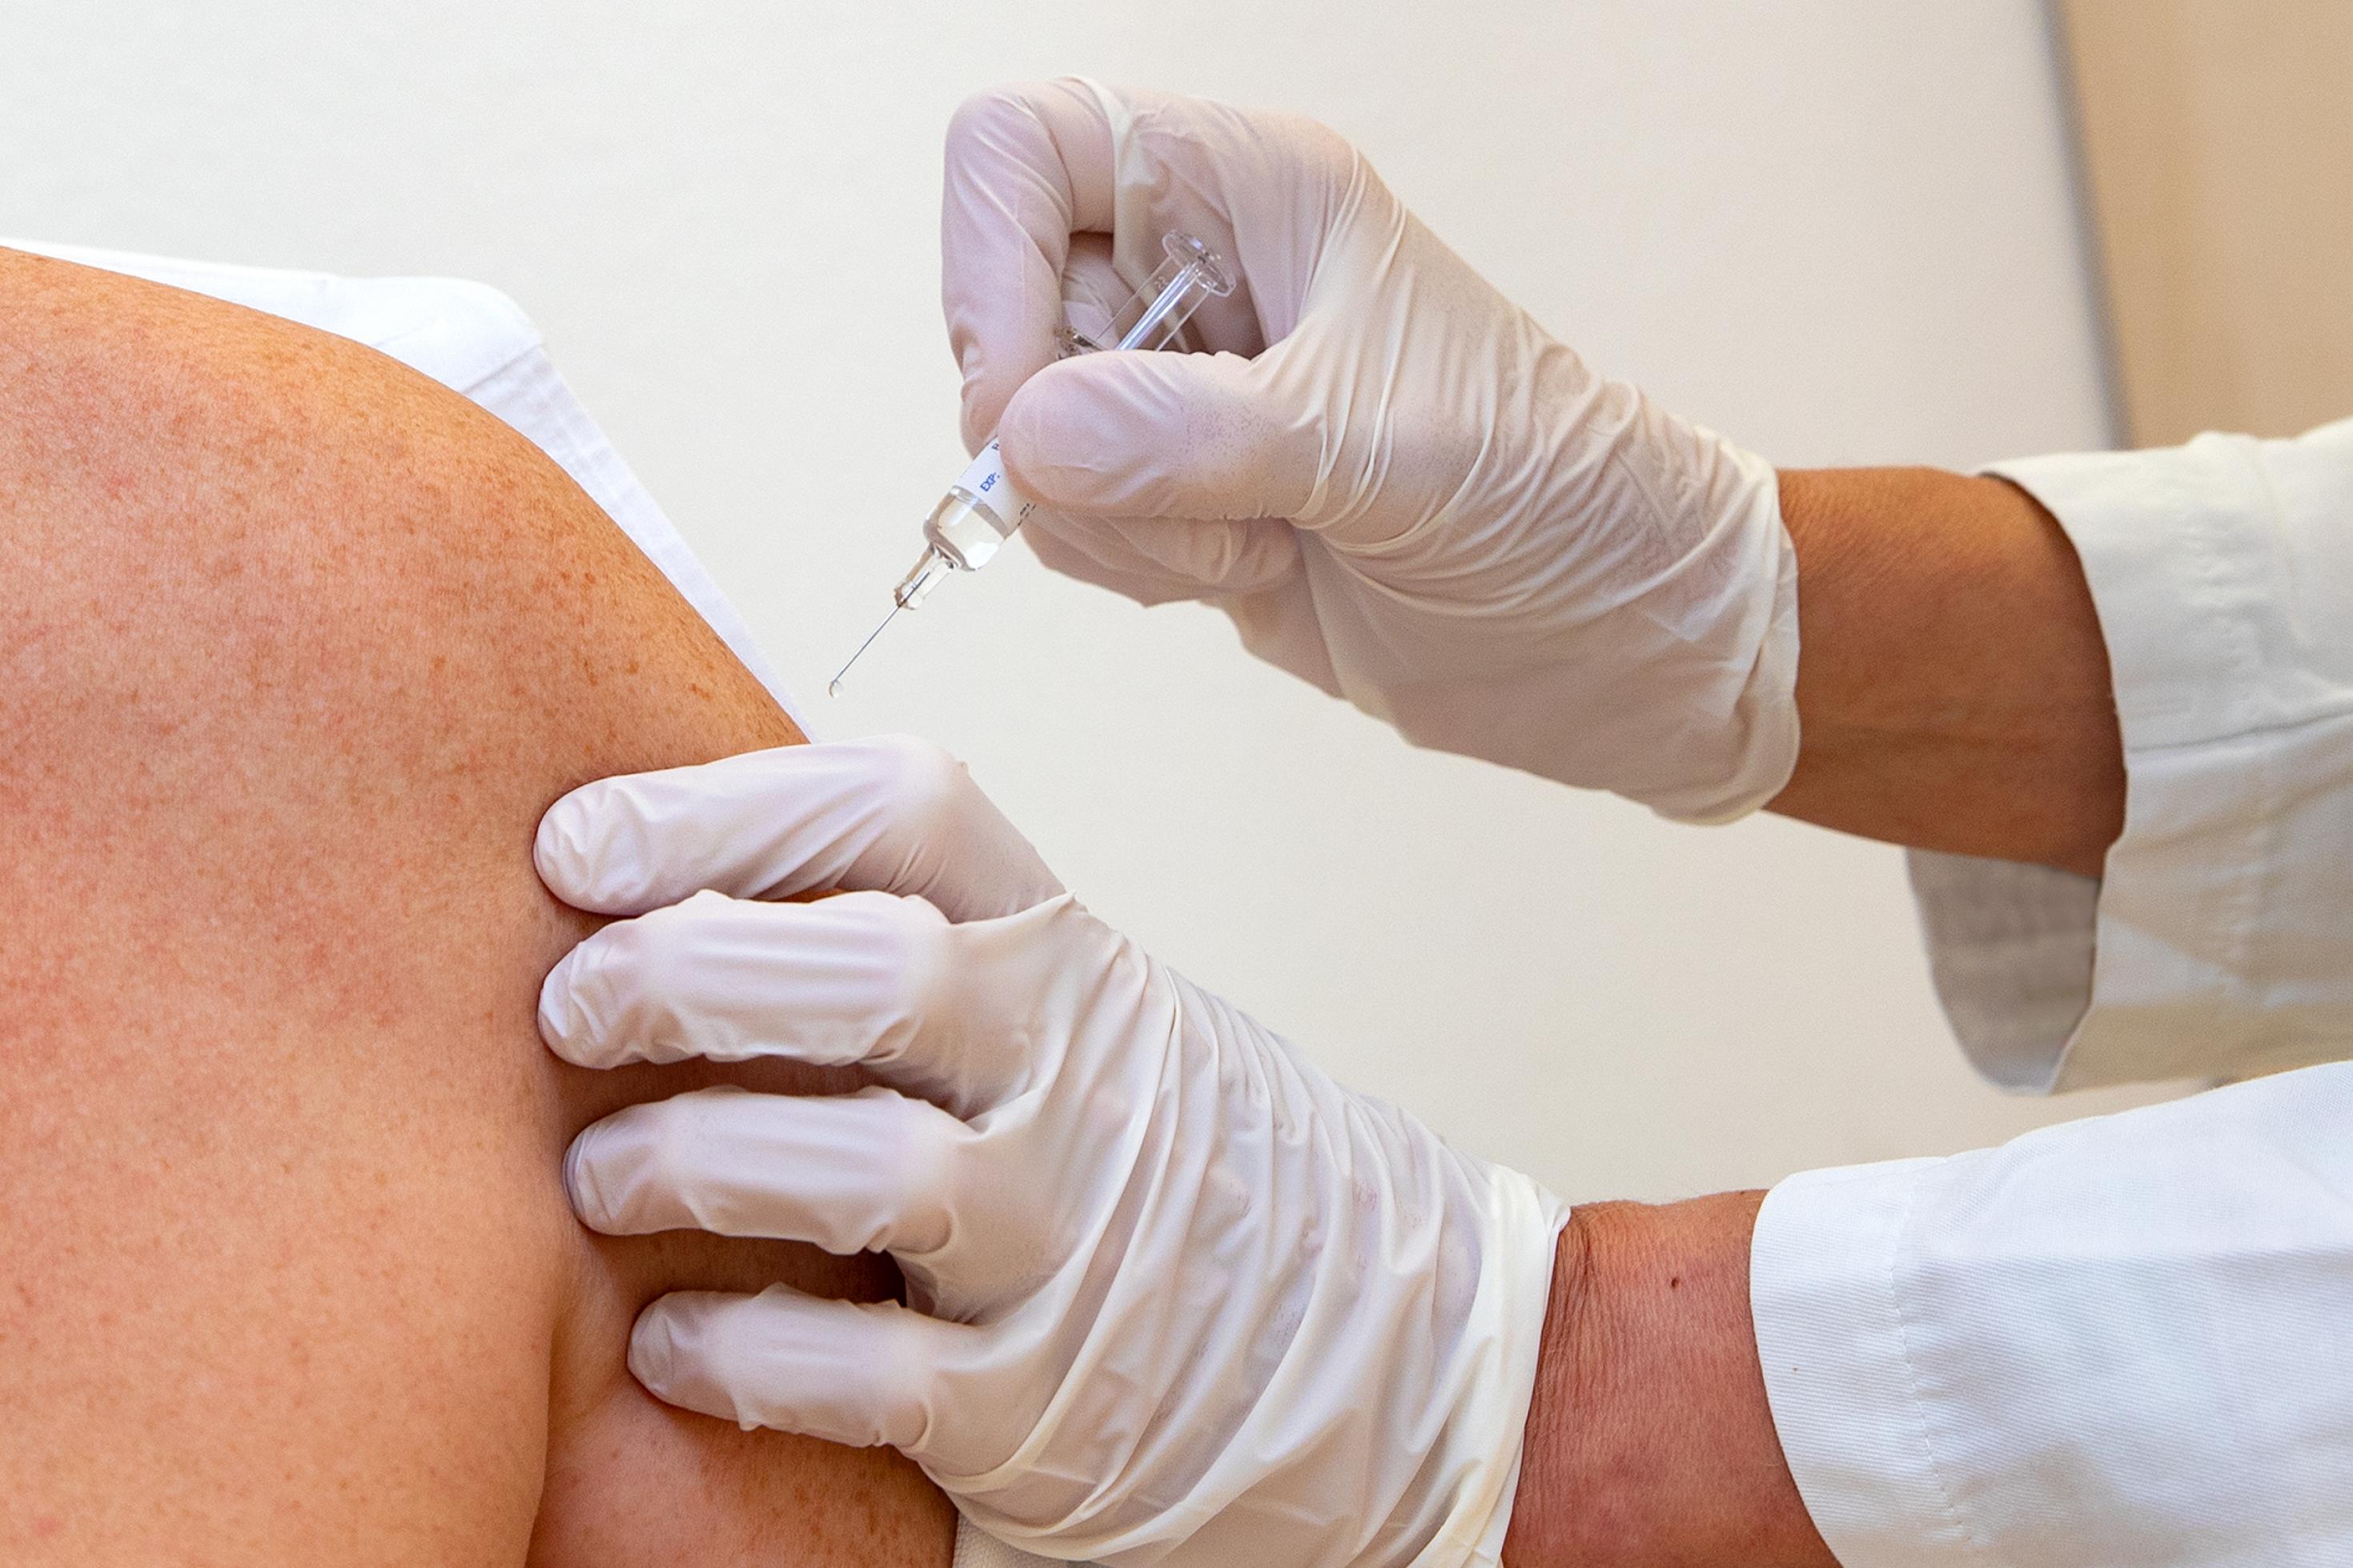 Eine Person von der nur die Schulter und der Oberarm zu sehen sind, bekommt mit einer kleinen Impfspritze einen Impfstoff injiziert.